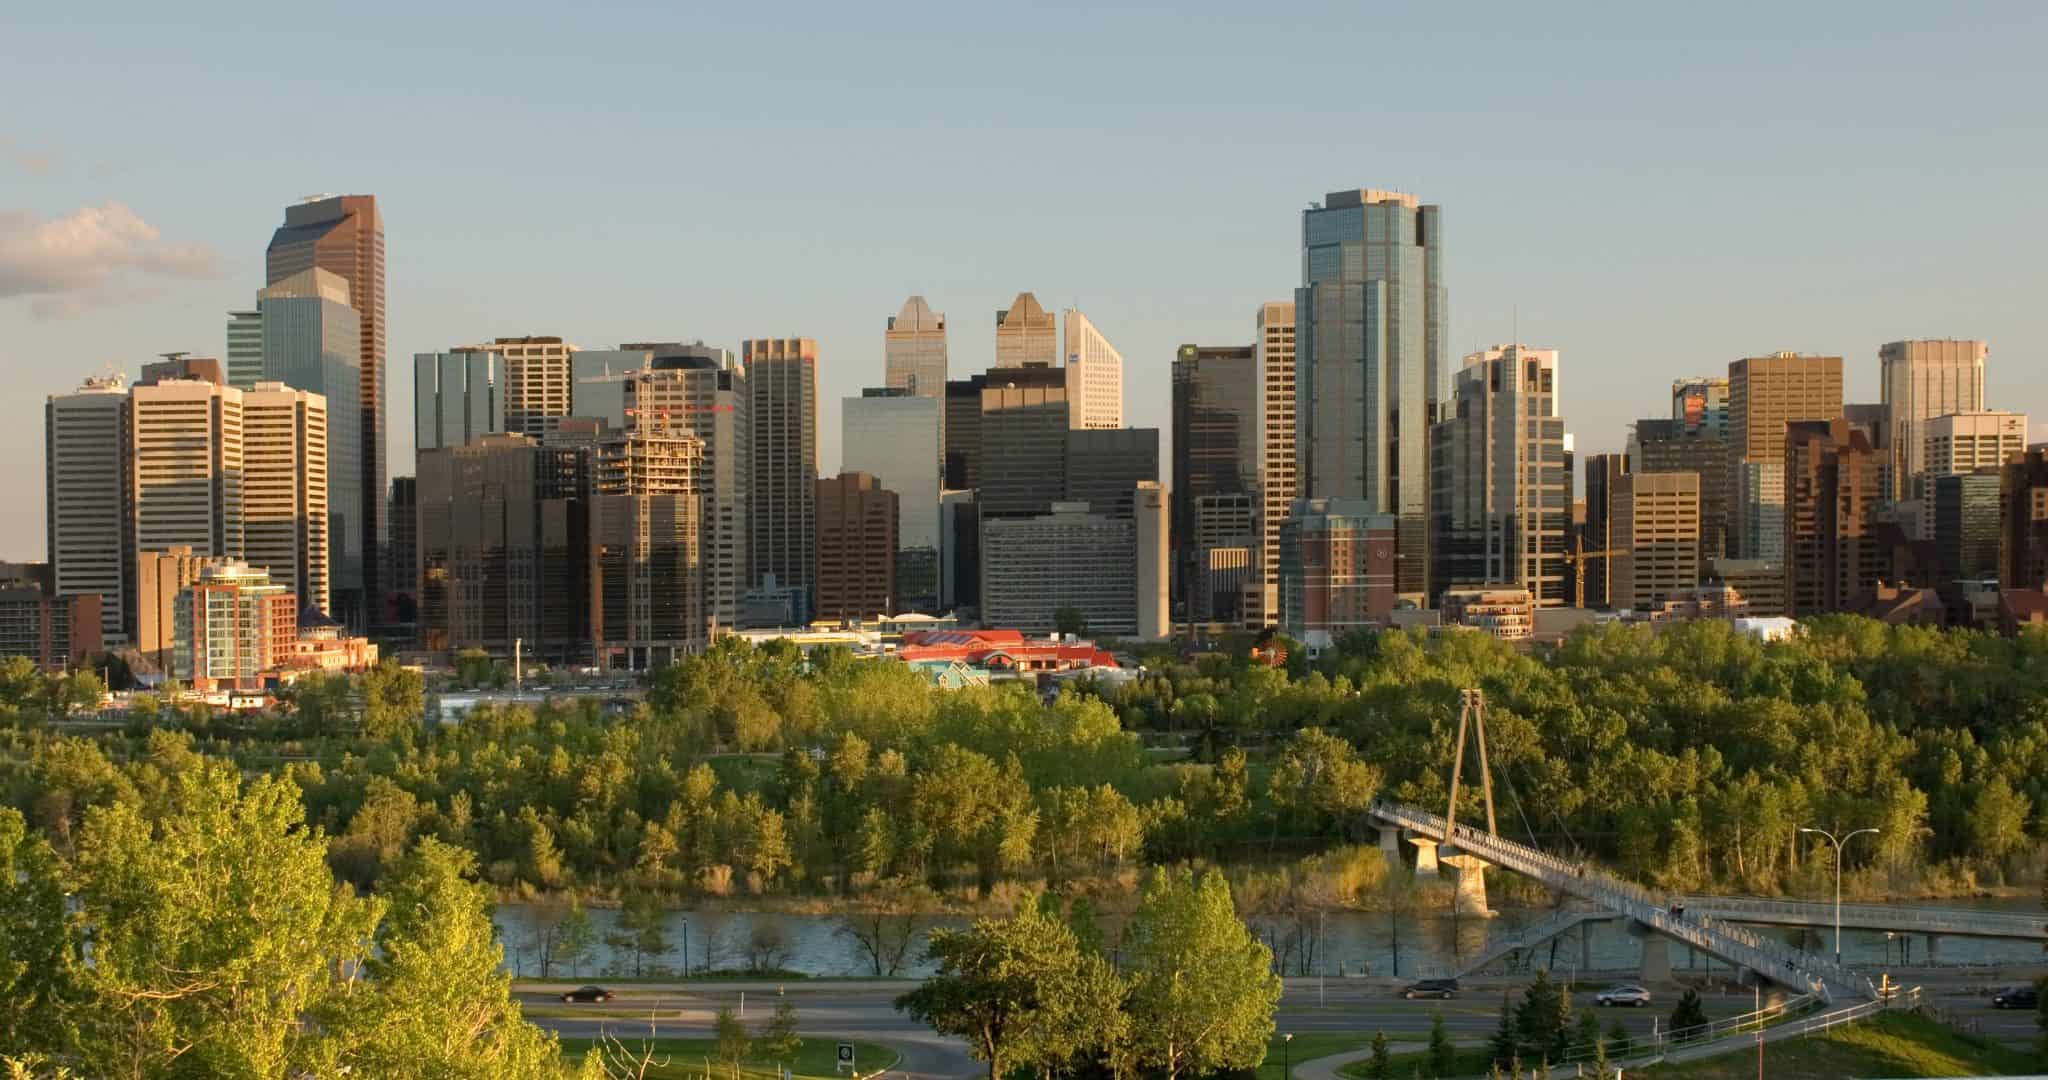 Thành phố Calgary thuộc bang Alberta, Canada được xếp hạng 5 trong danh sách